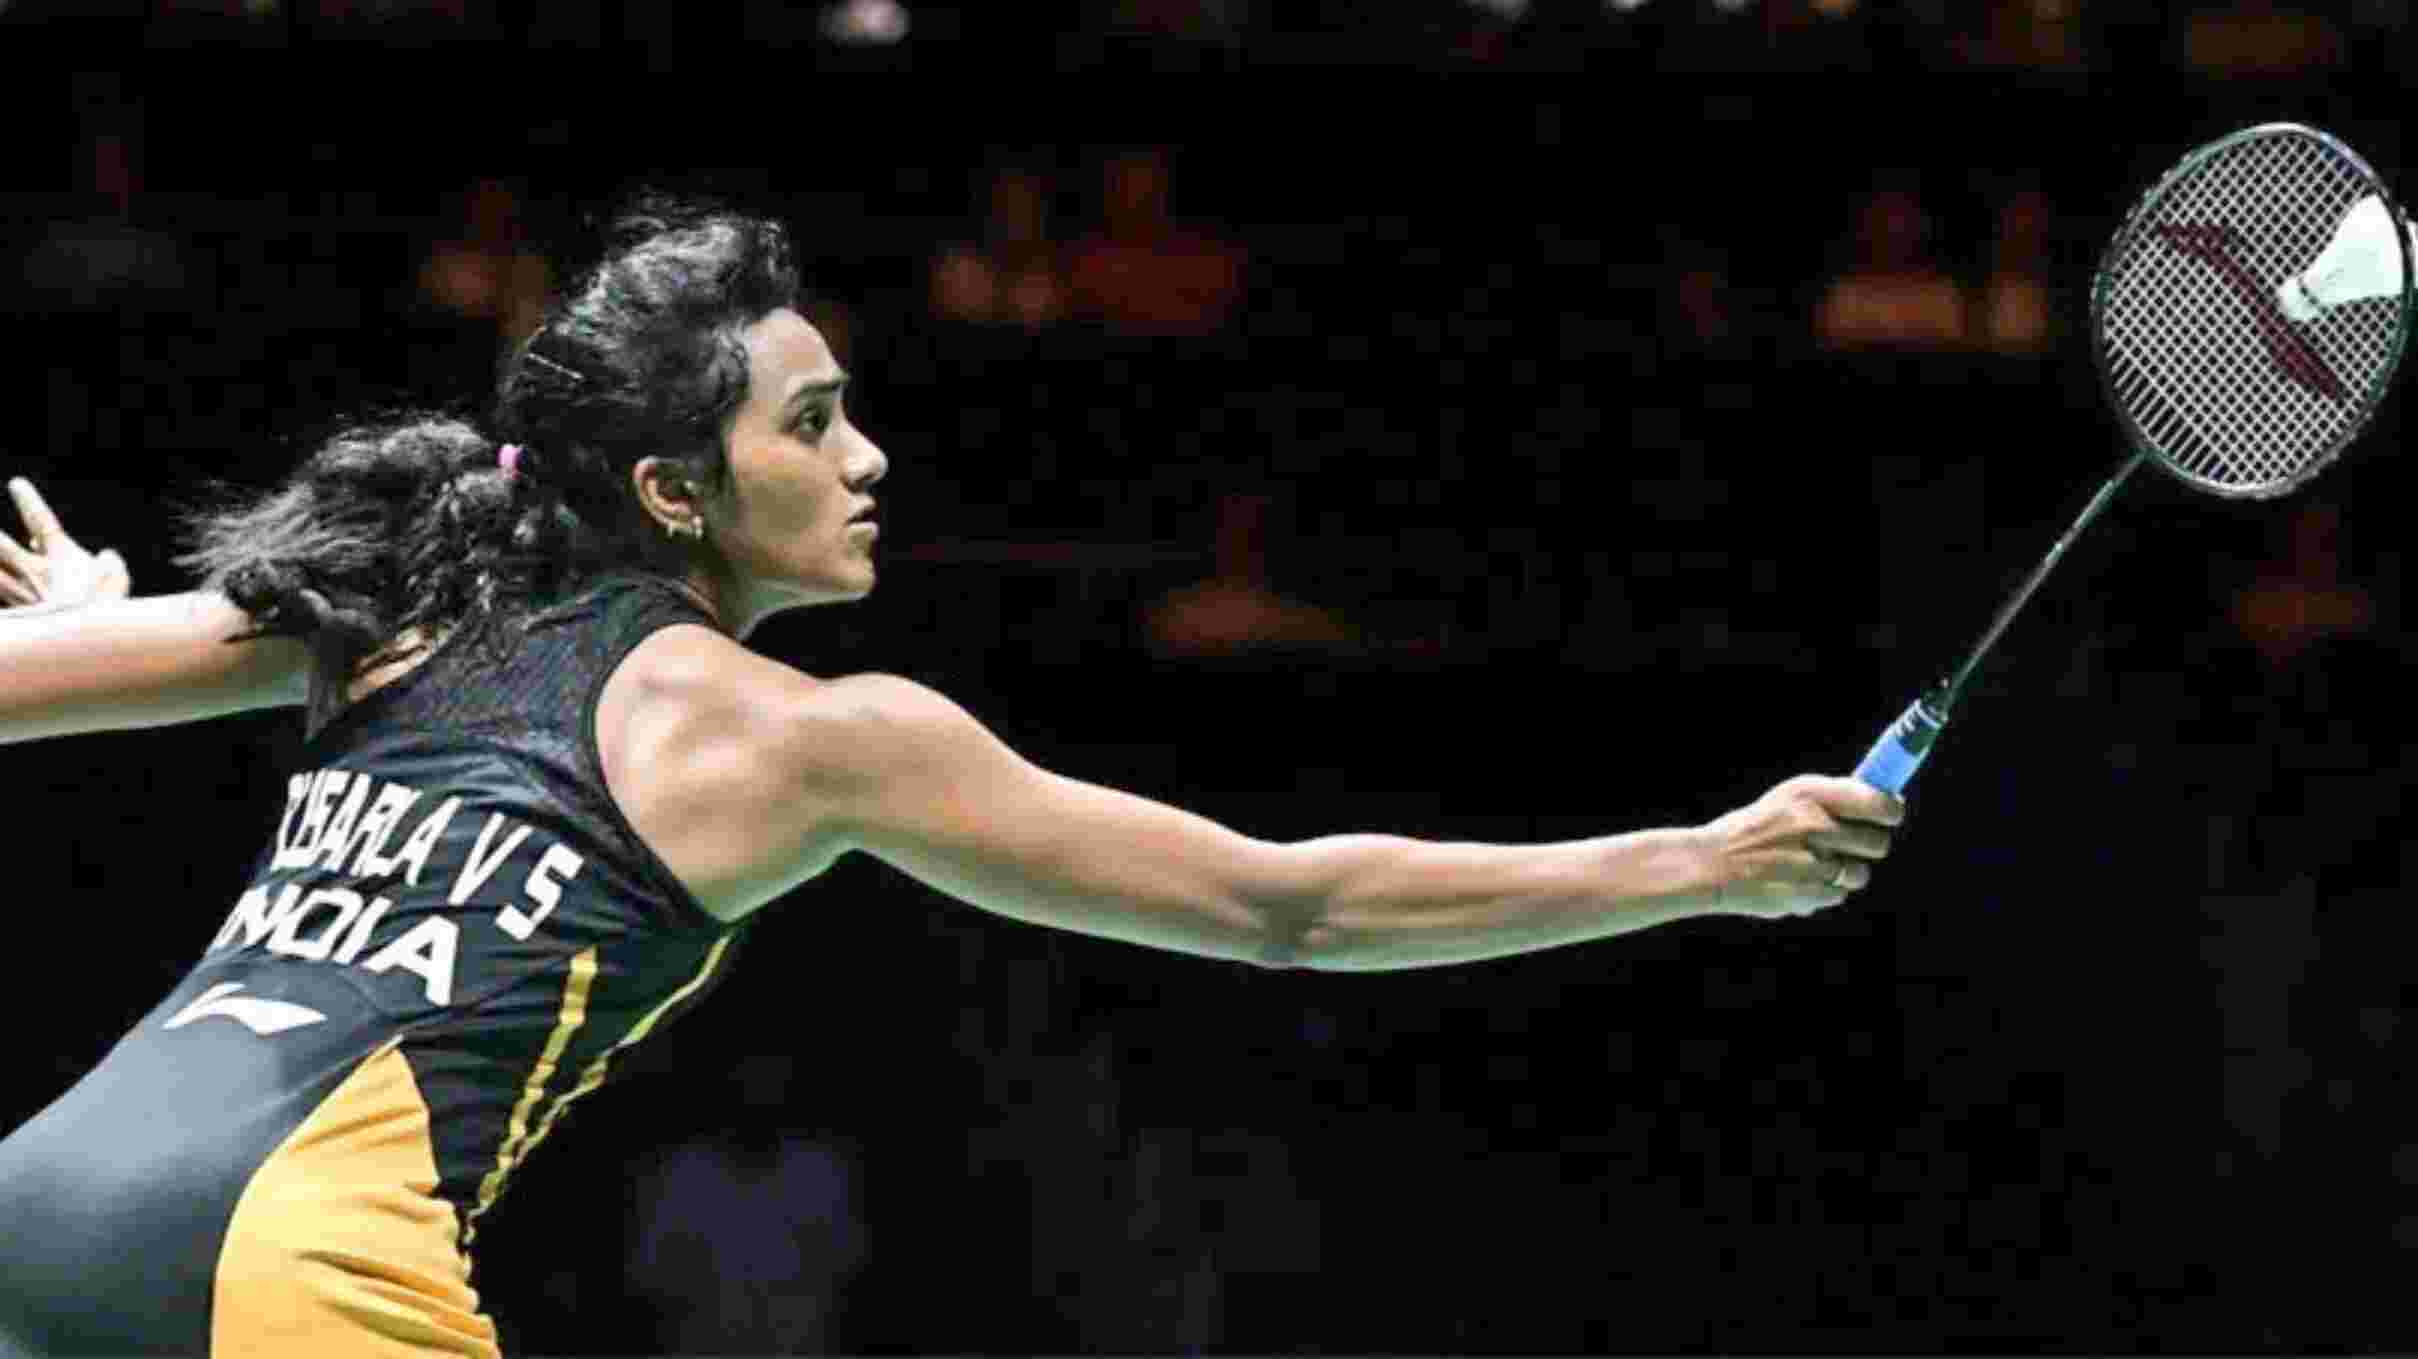 पीवी सिंधु की शानदार जीत,वर्ल्ड बैडमिंटन चैम्पियनशिप जीतने वाली पहली भारतीय महिला